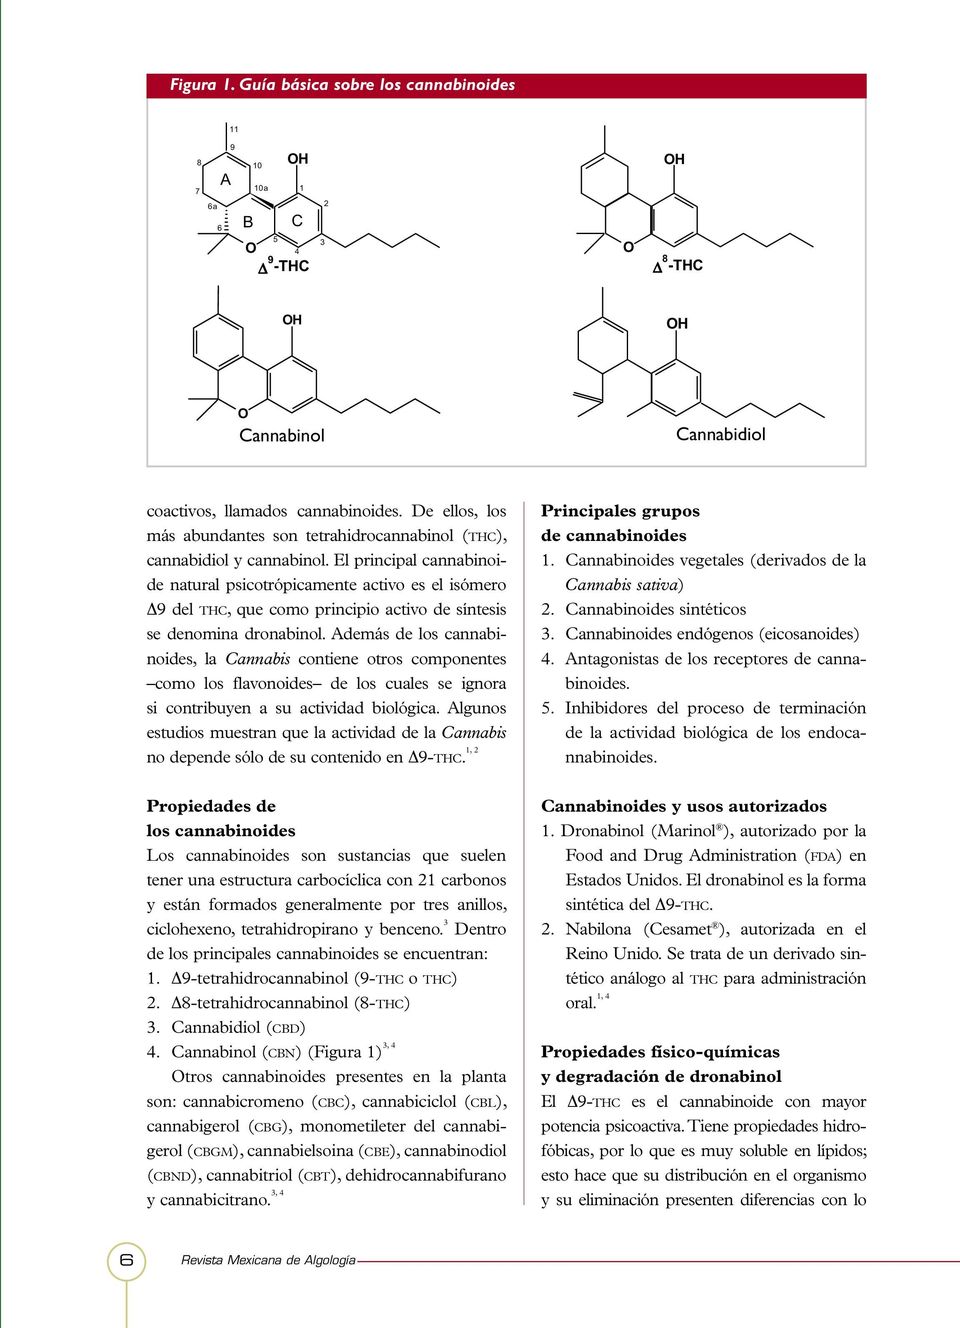 El principal cannabinoide natural psicotrópicamente activo es el isómero Δ9 del THC, que como principio activo de síntesis se denomina dronabinol.